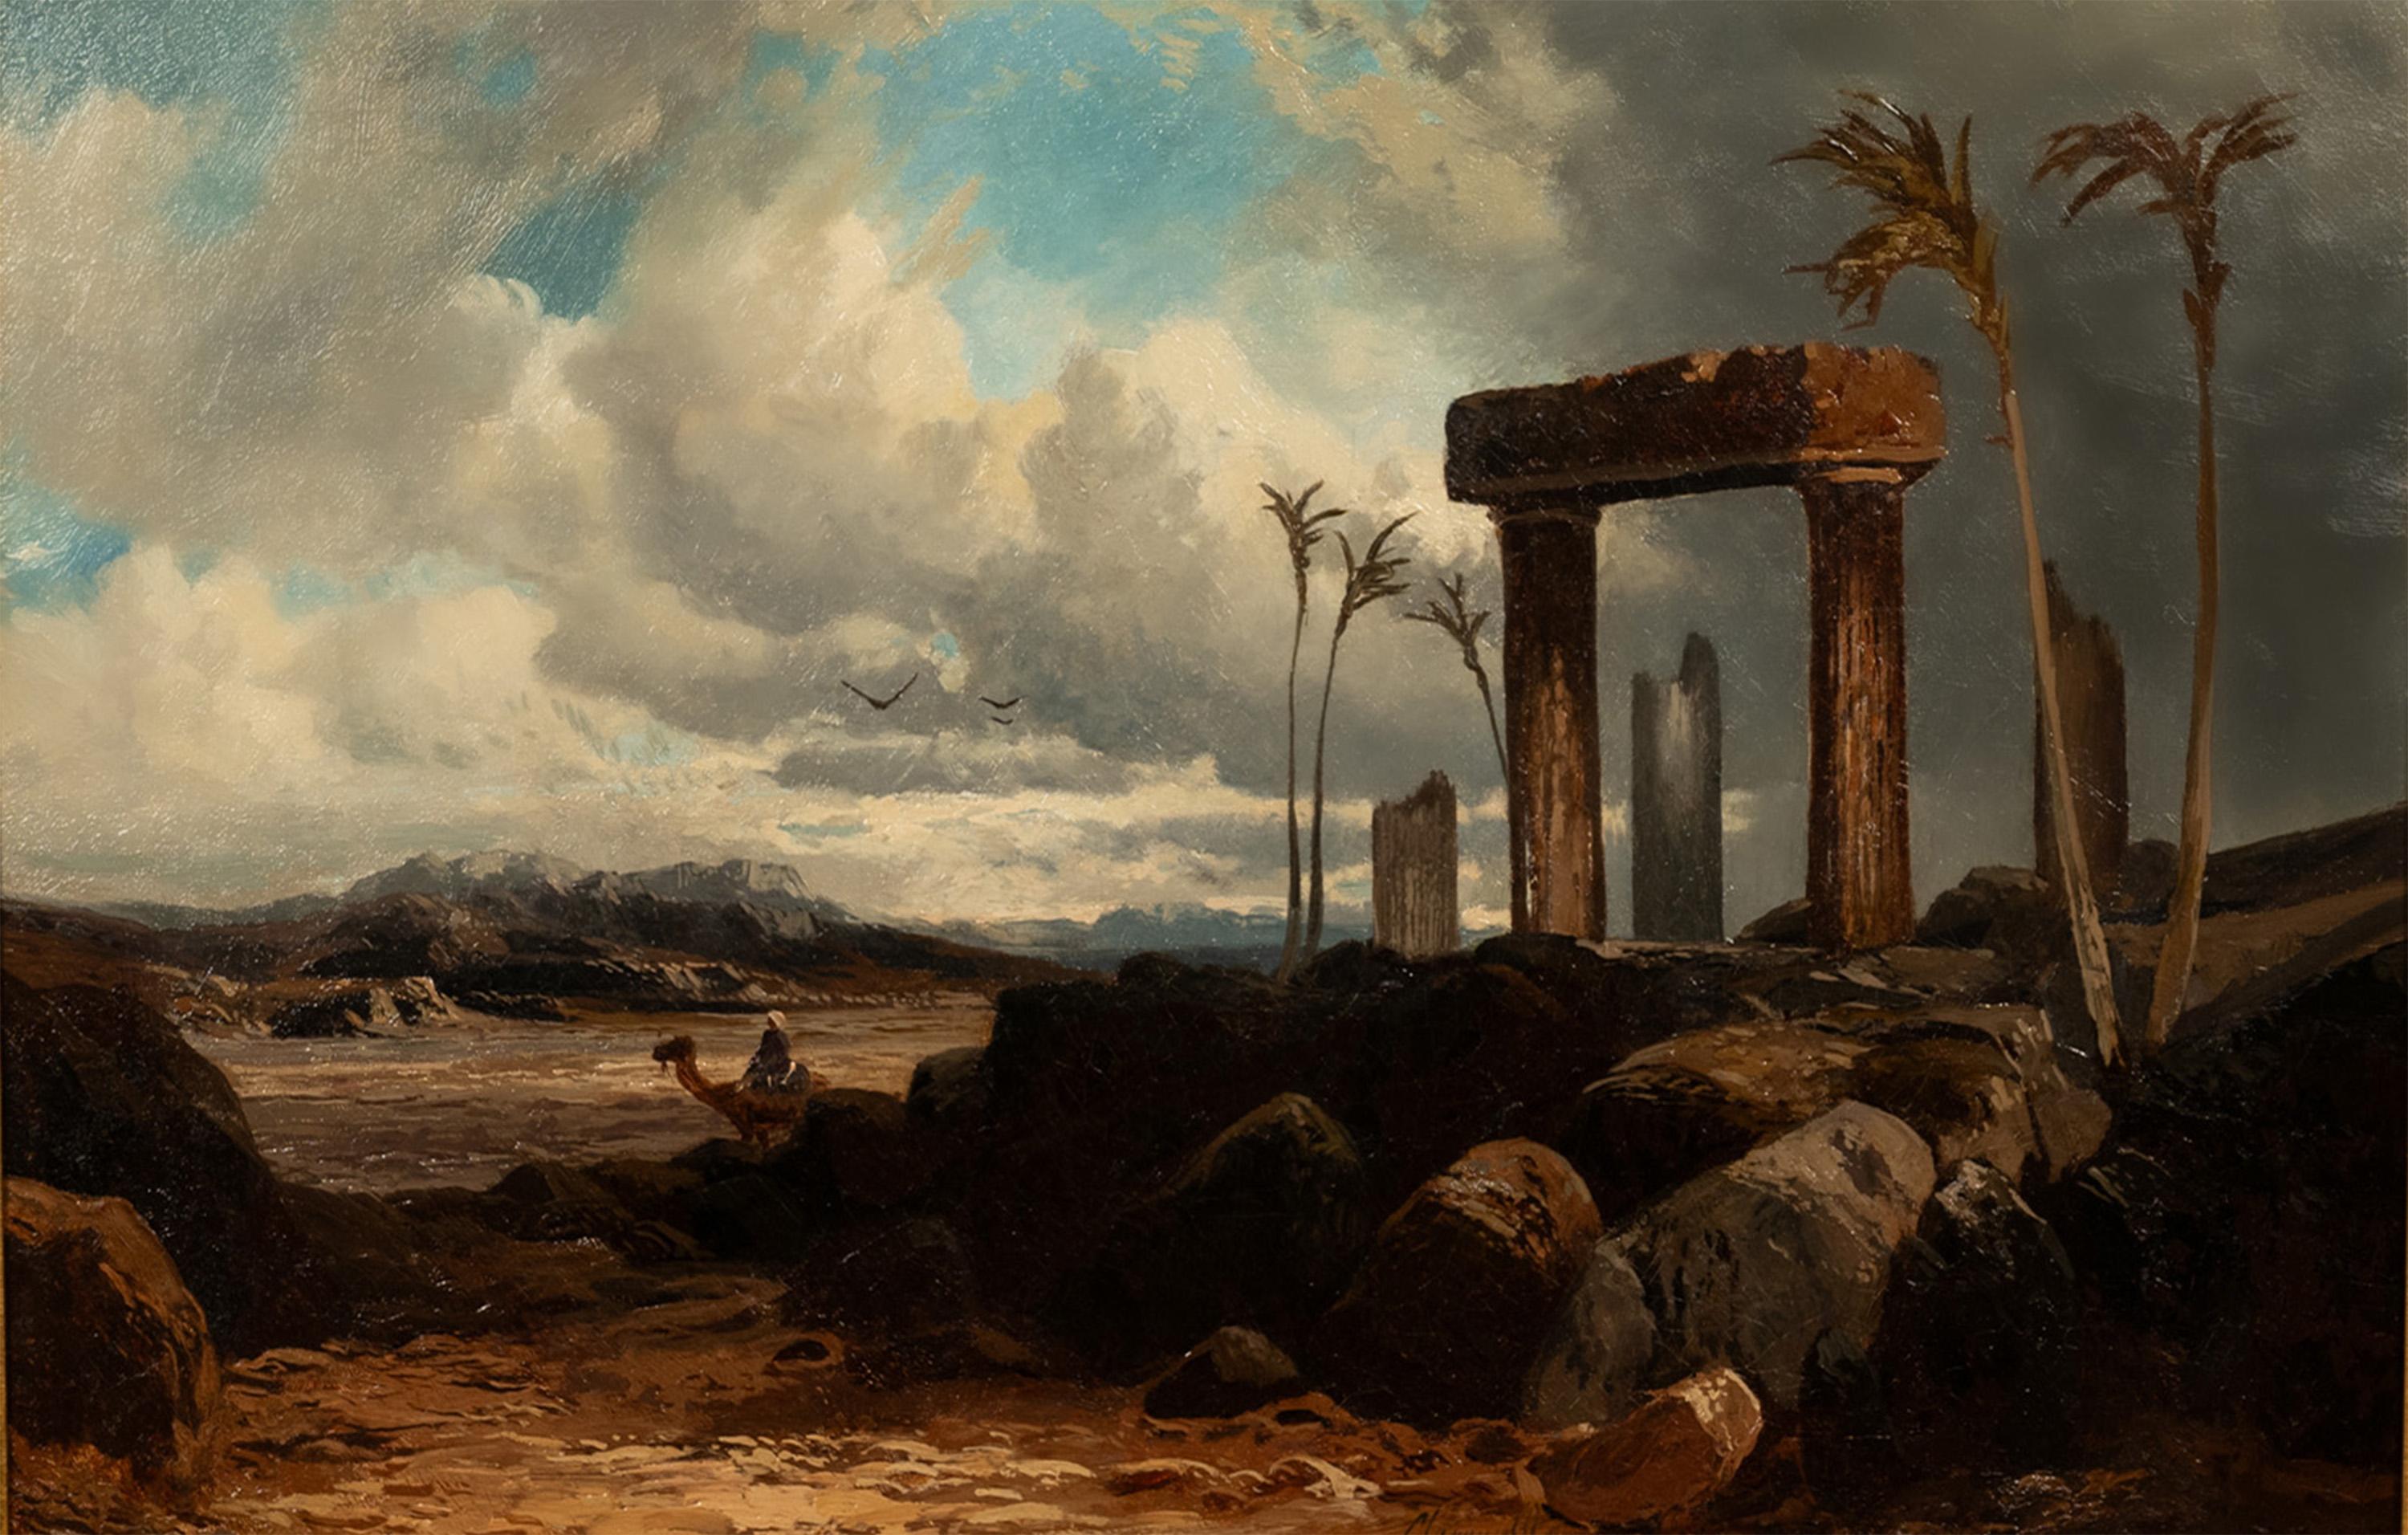 Une belle et importante huile sur toile orientaliste du XIXe siècle du talentueux peintre Clarence Henry Roe (1850-1909), représentant la ville historique de Palmyre, en Syrie, vers 1880.
Cette peinture représente Palmyre en Syrie, une ville riche